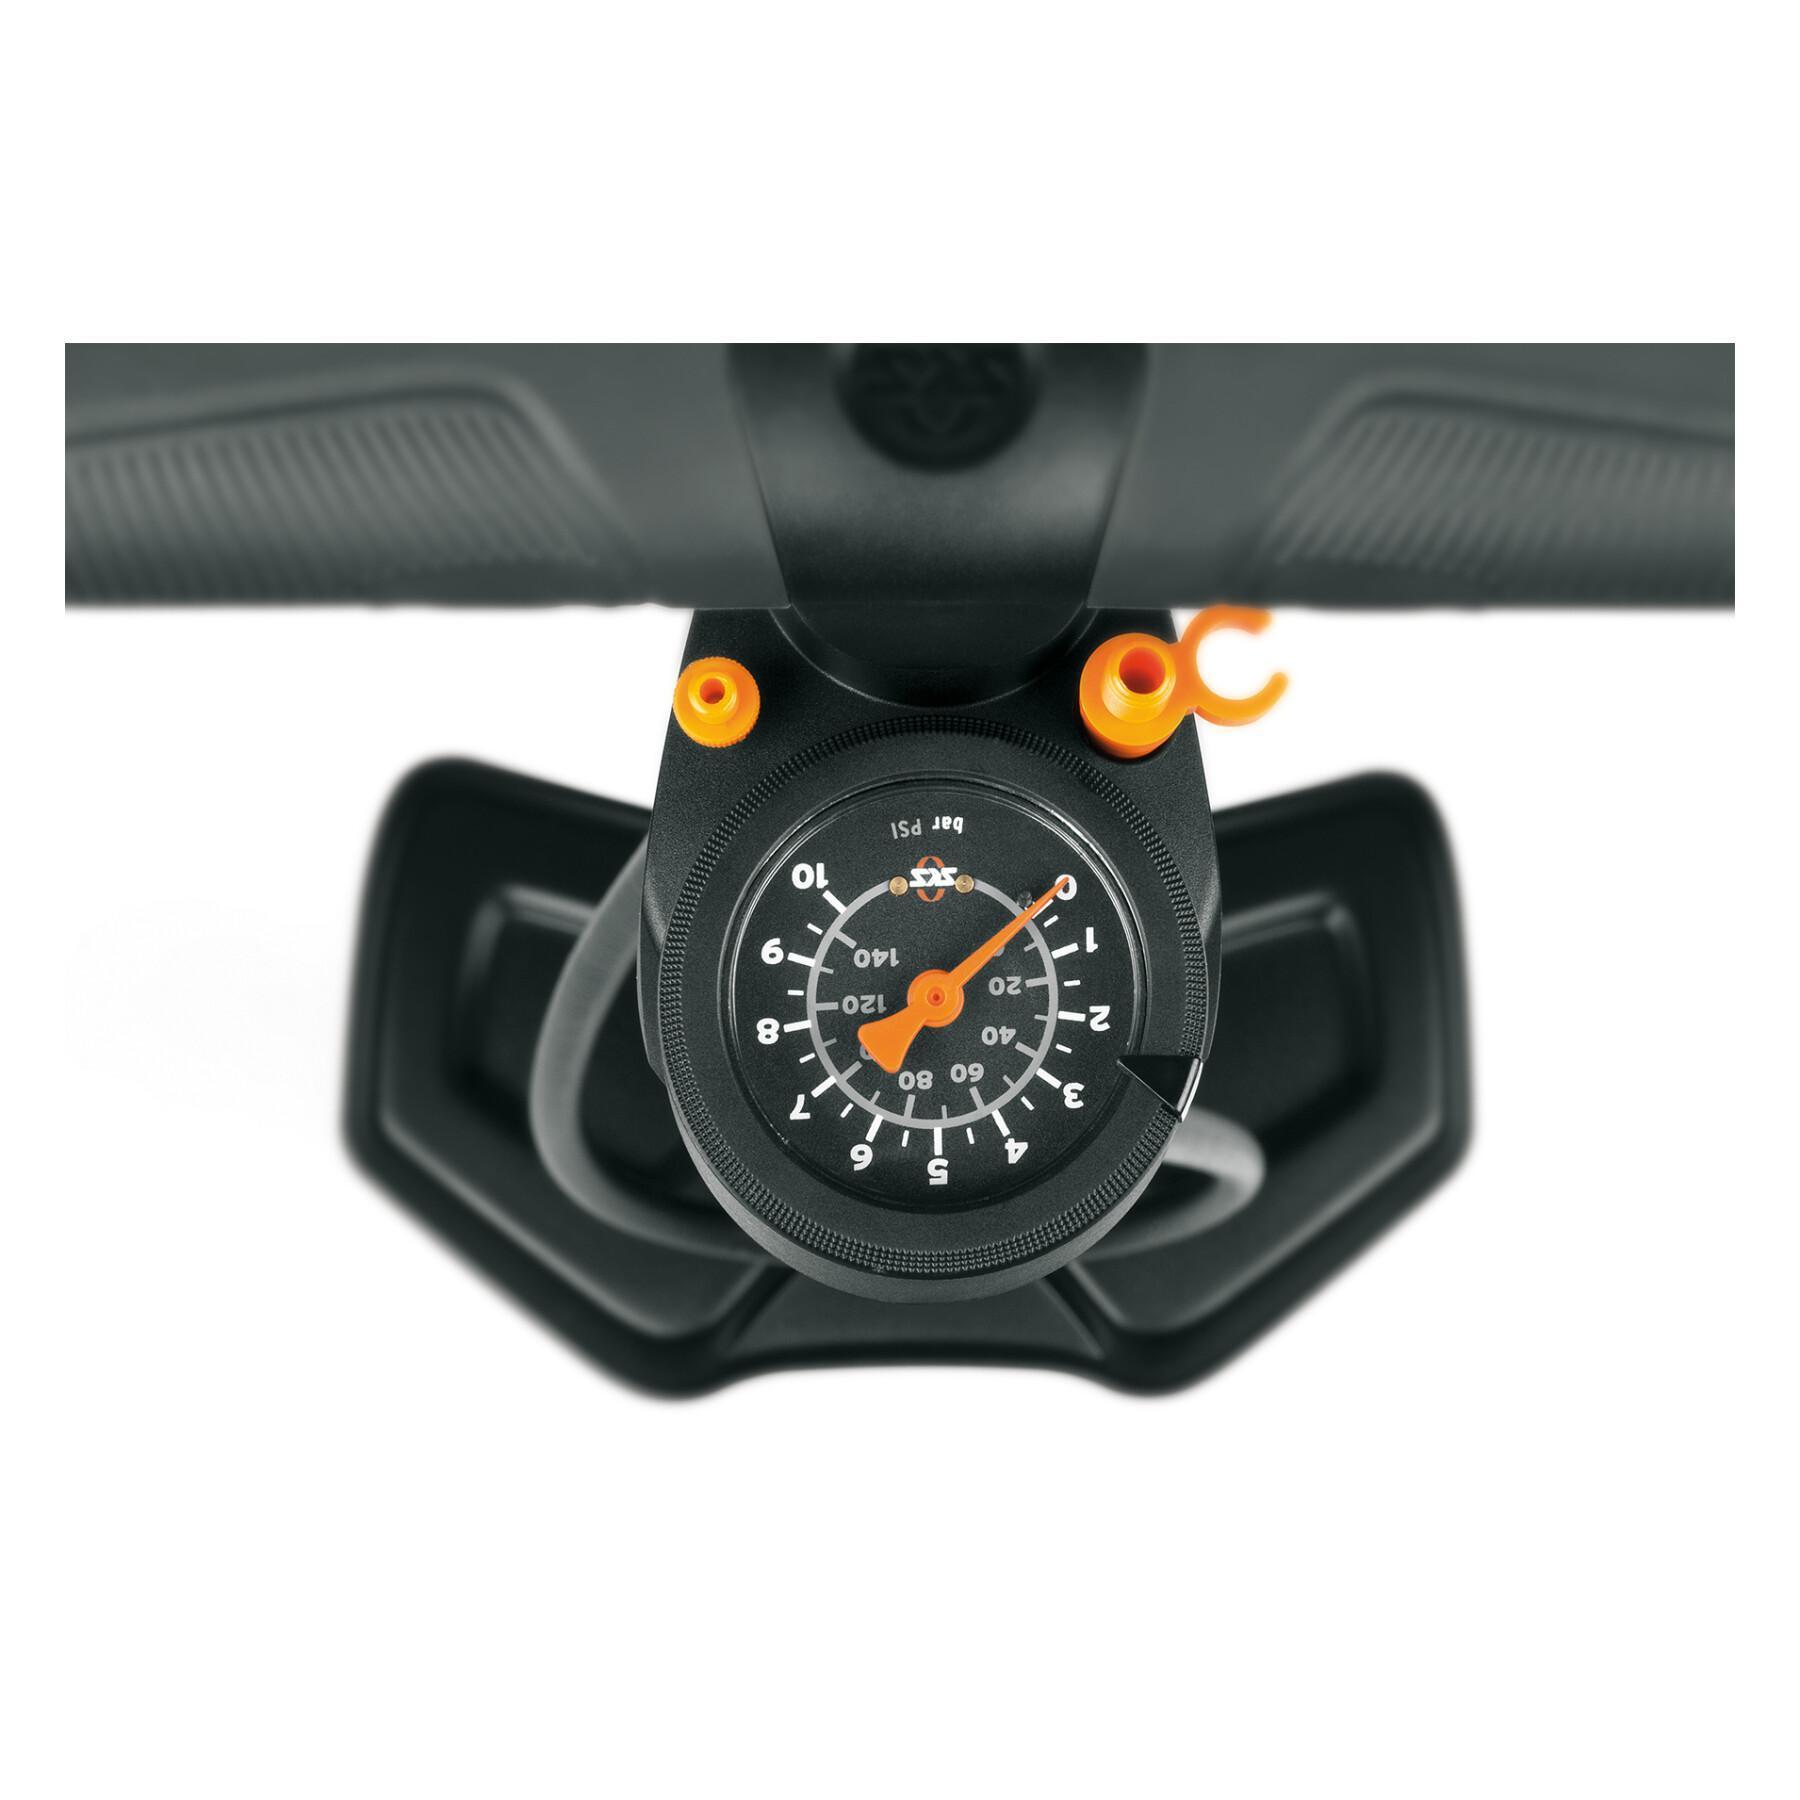 Pompa a pedale SKS Airworx 10.0